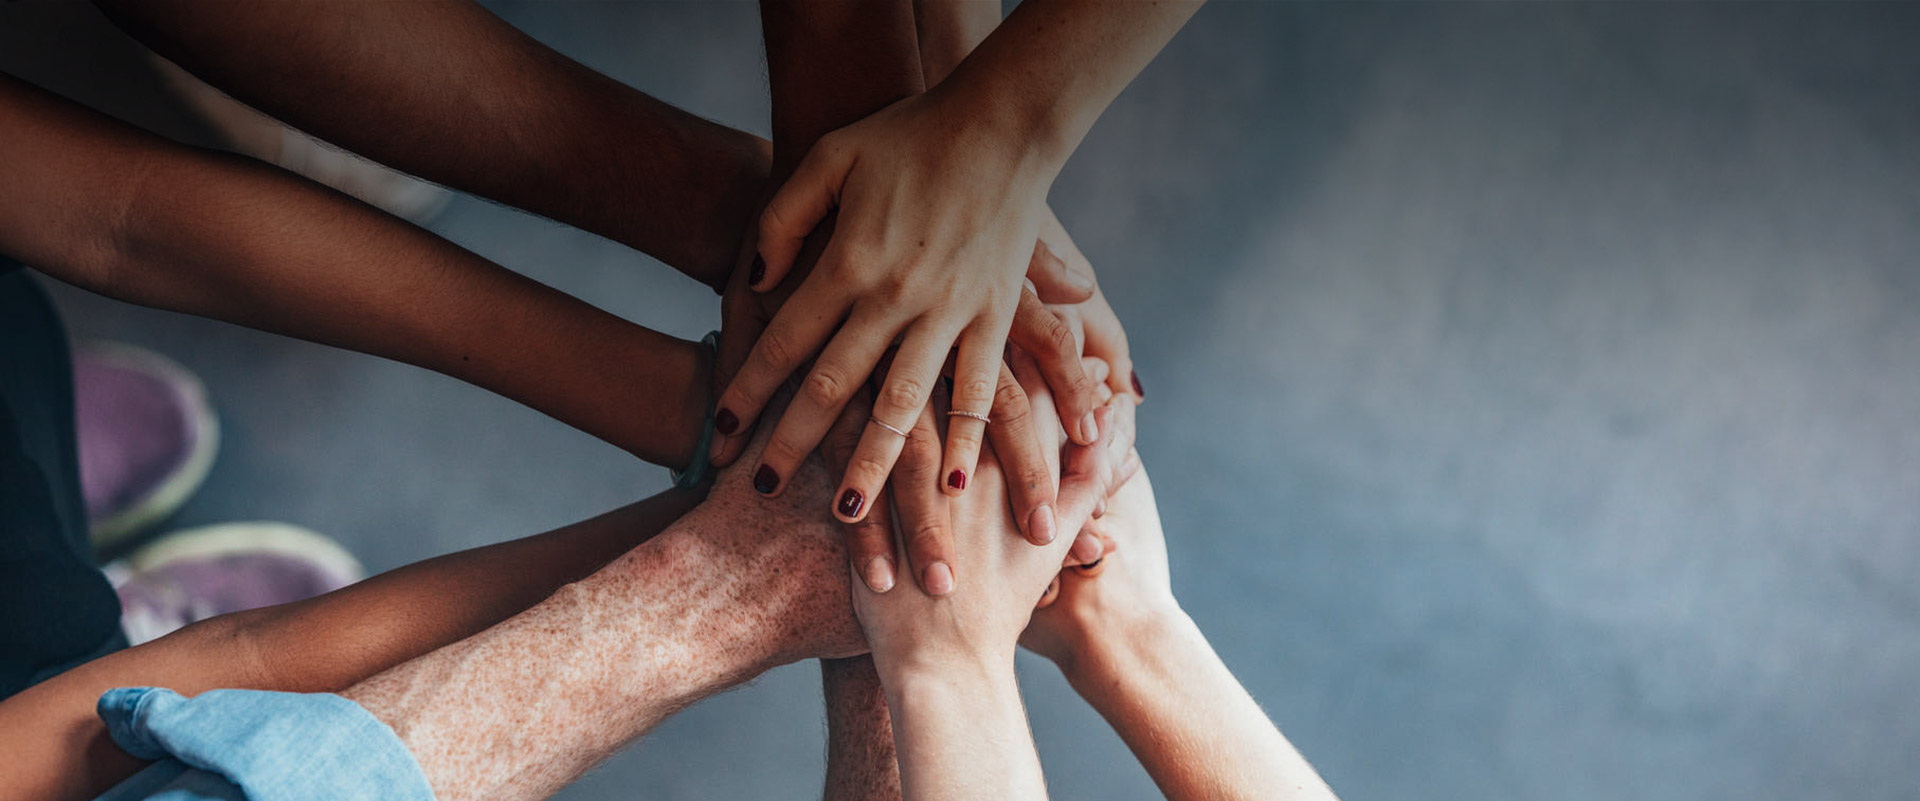 Geste Zusammenhalt – viele Hände berühren einander